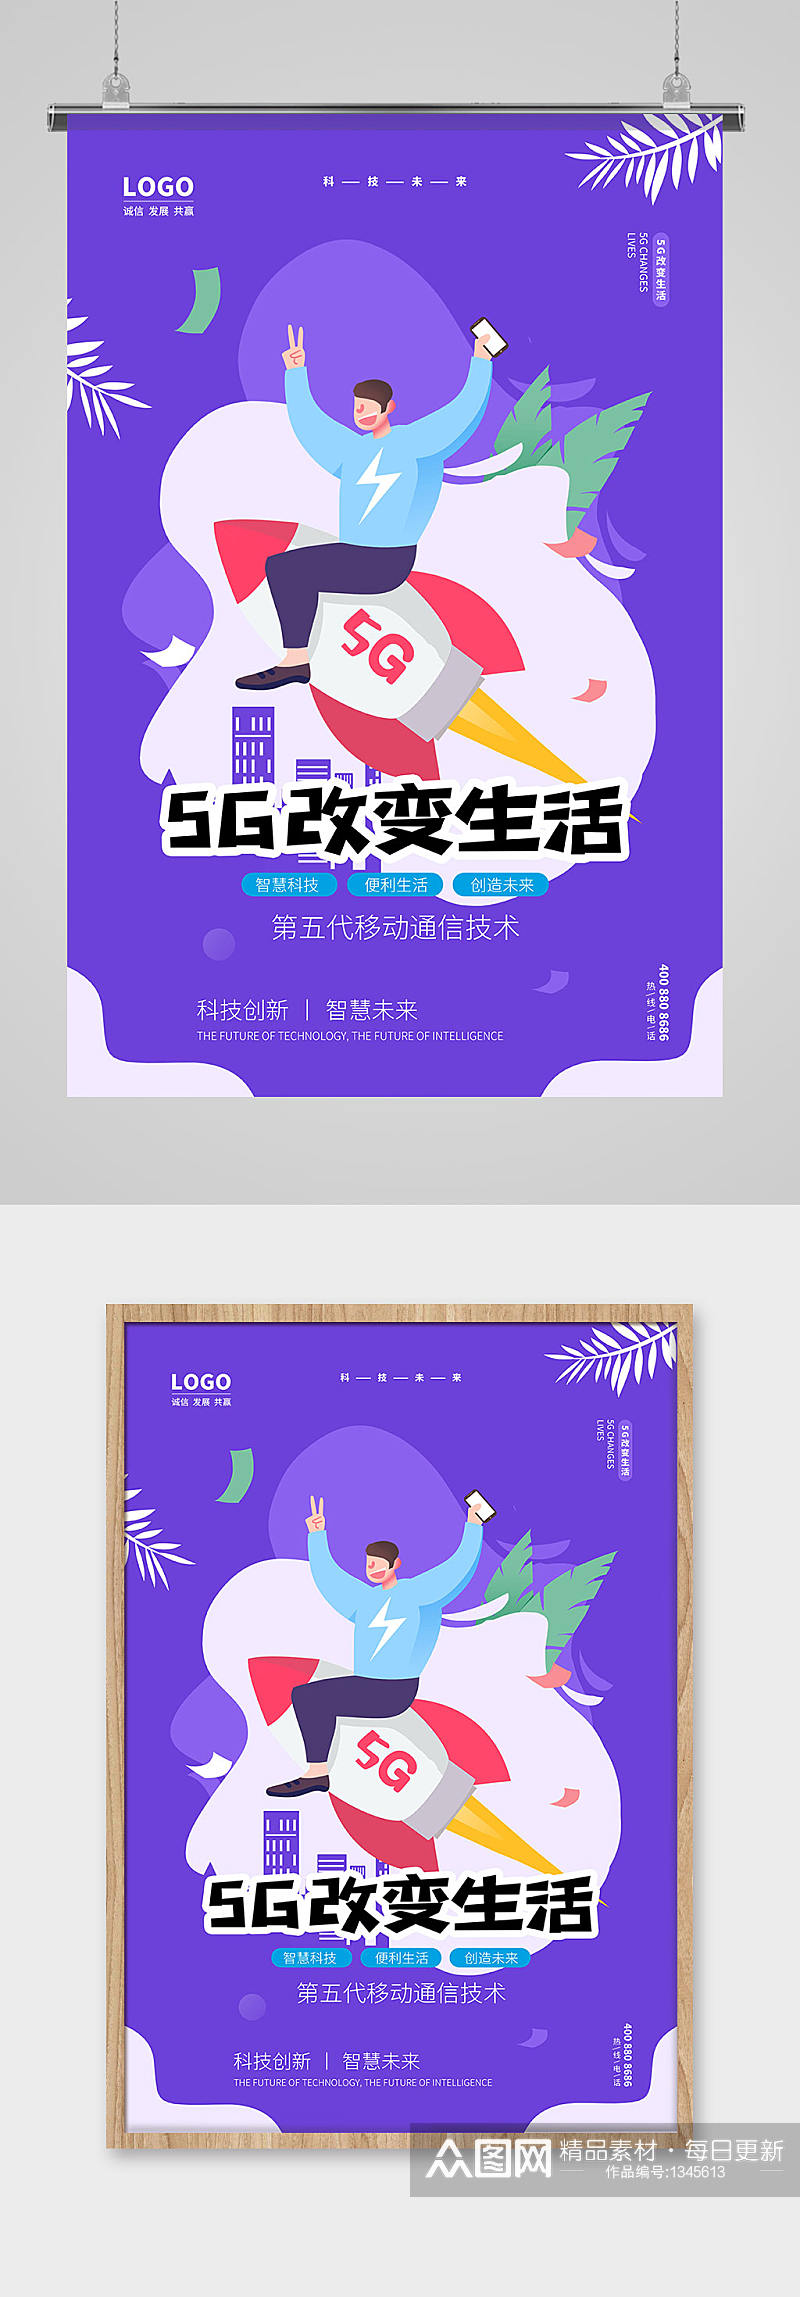 蓝紫色5G改变生活科技海报设计素材